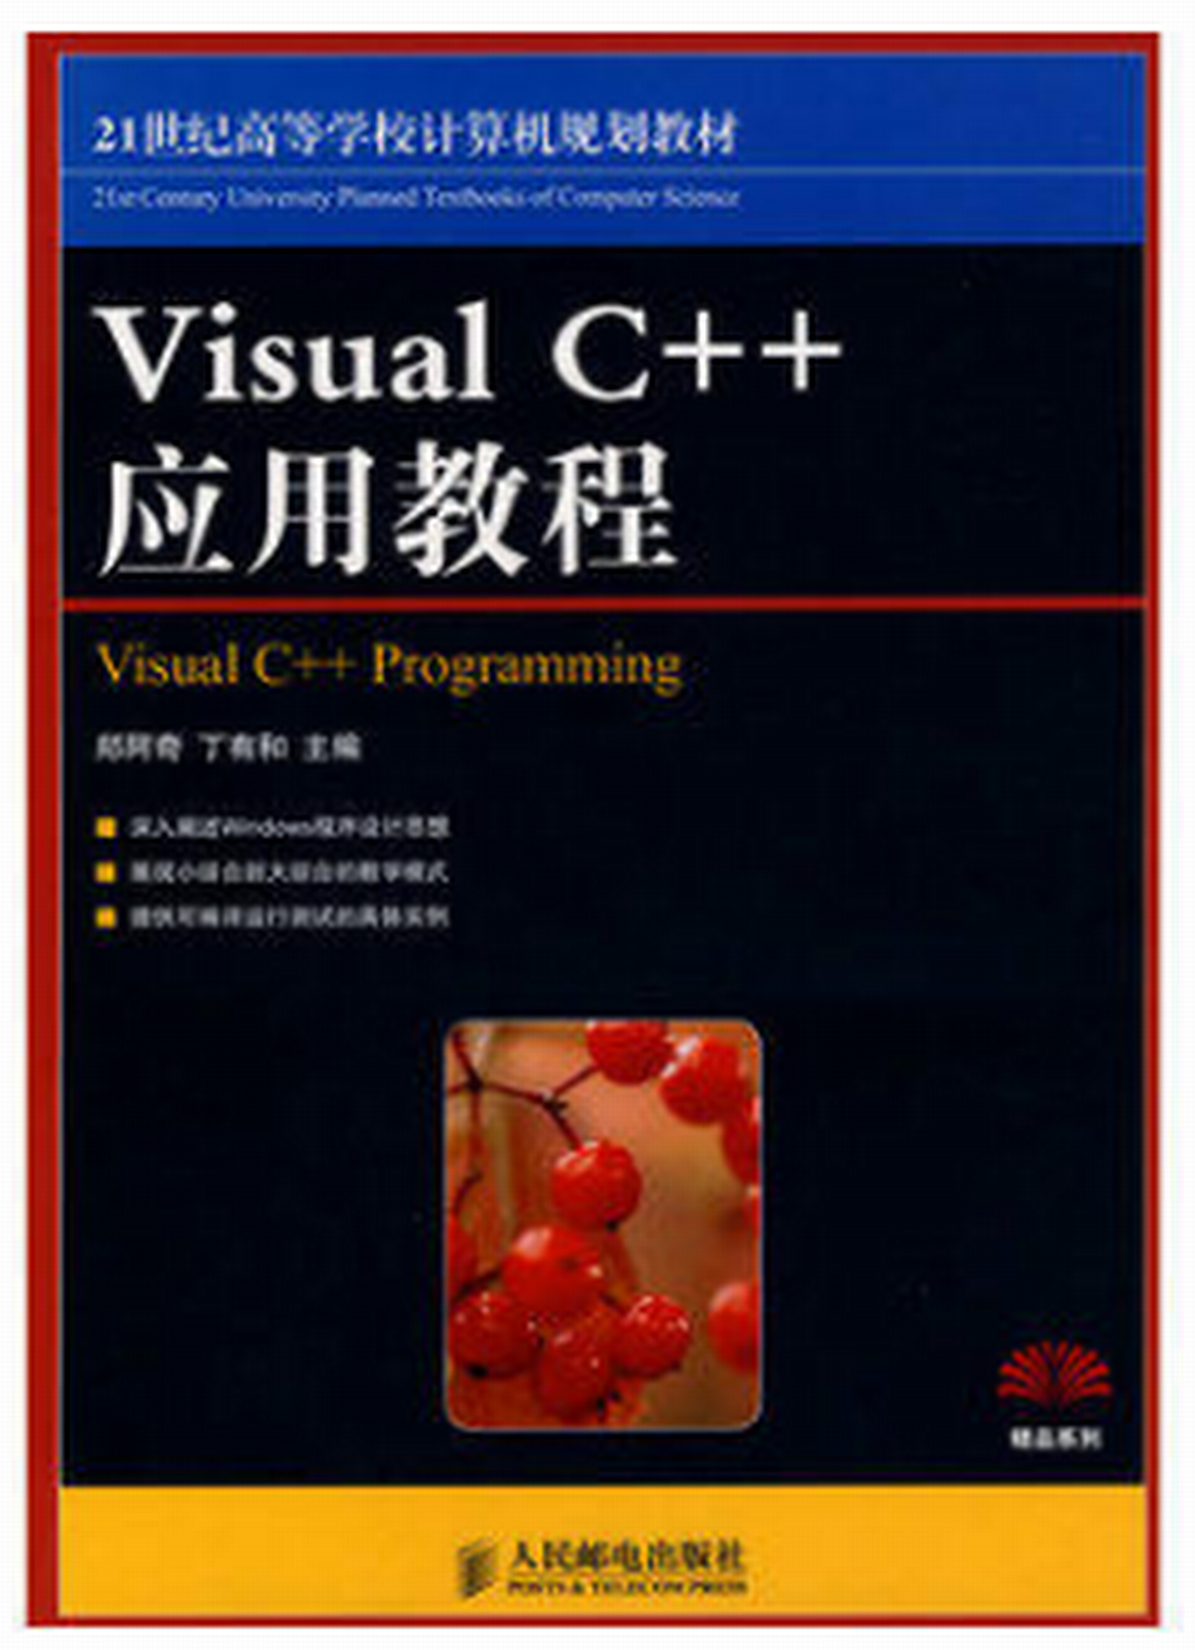 21世紀高等學校計算機規劃教材·VisualC++實用教程